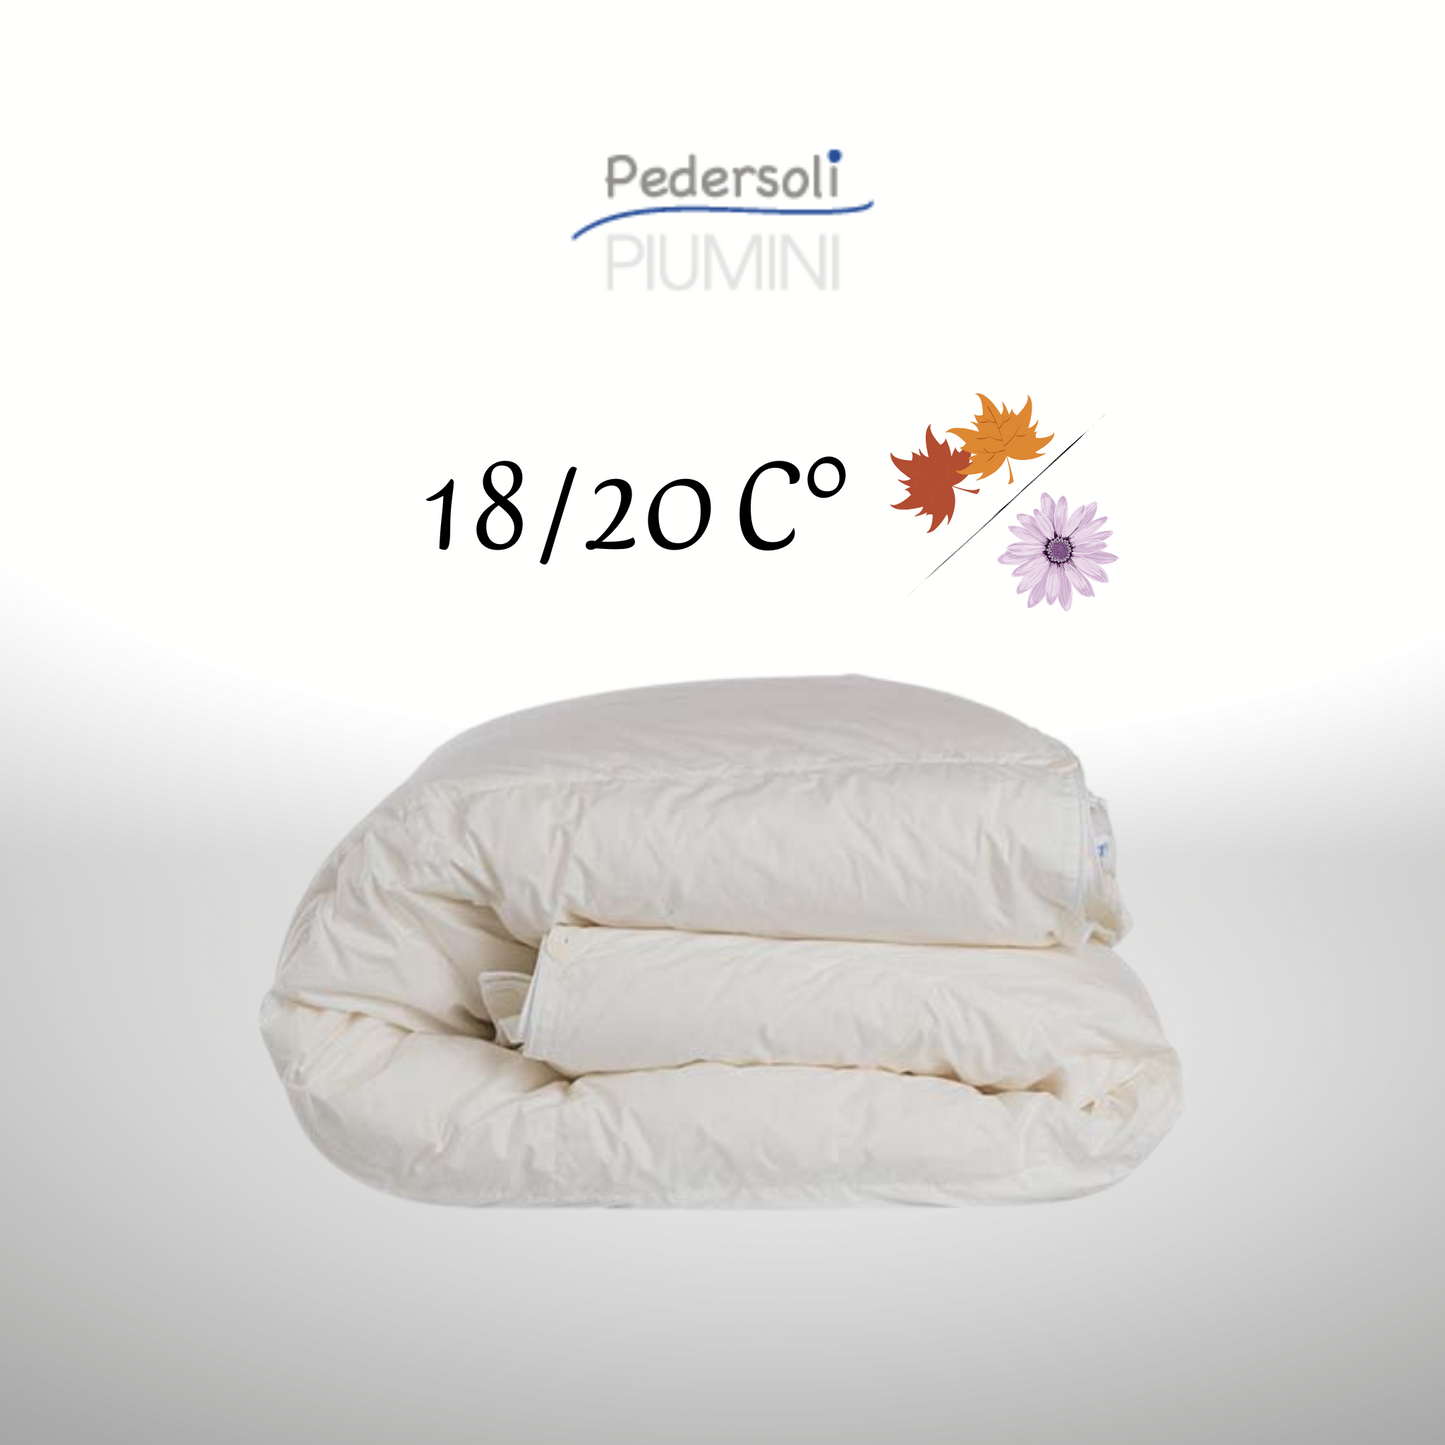 Piumino Superior Protex + Active Cotton Polonia mezza stagione Pedersoli Piumini